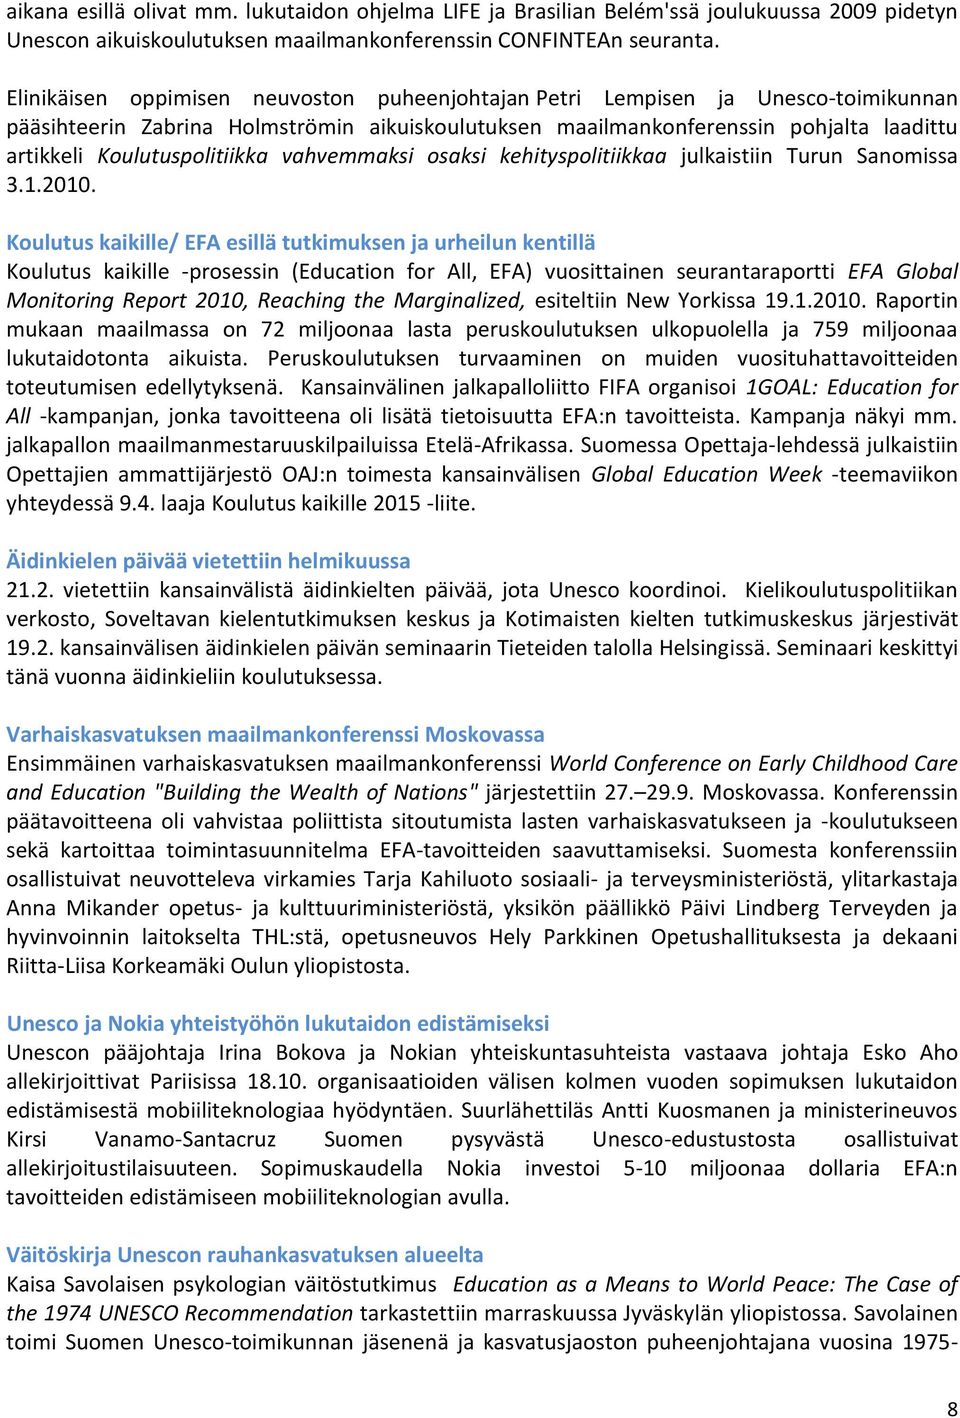 Koulutuspolitiikka vahvemmaksi osaksi kehityspolitiikkaa julkaistiin Turun Sanomissa 3.1.2010.